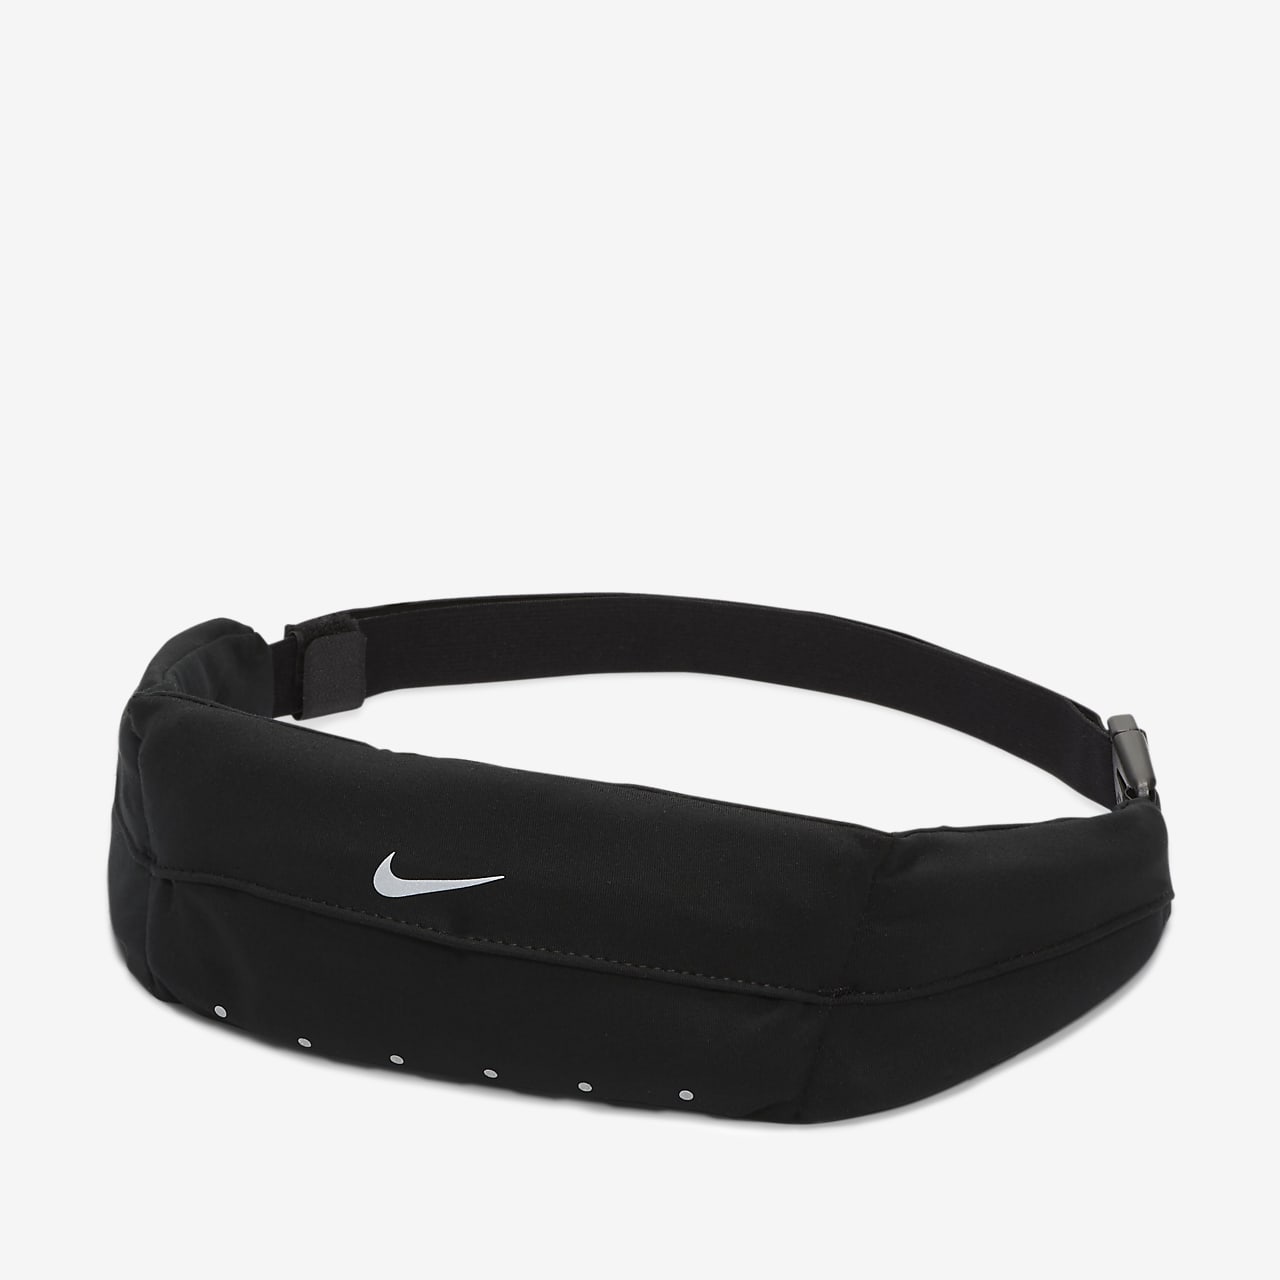 Nike Expandable Pack.